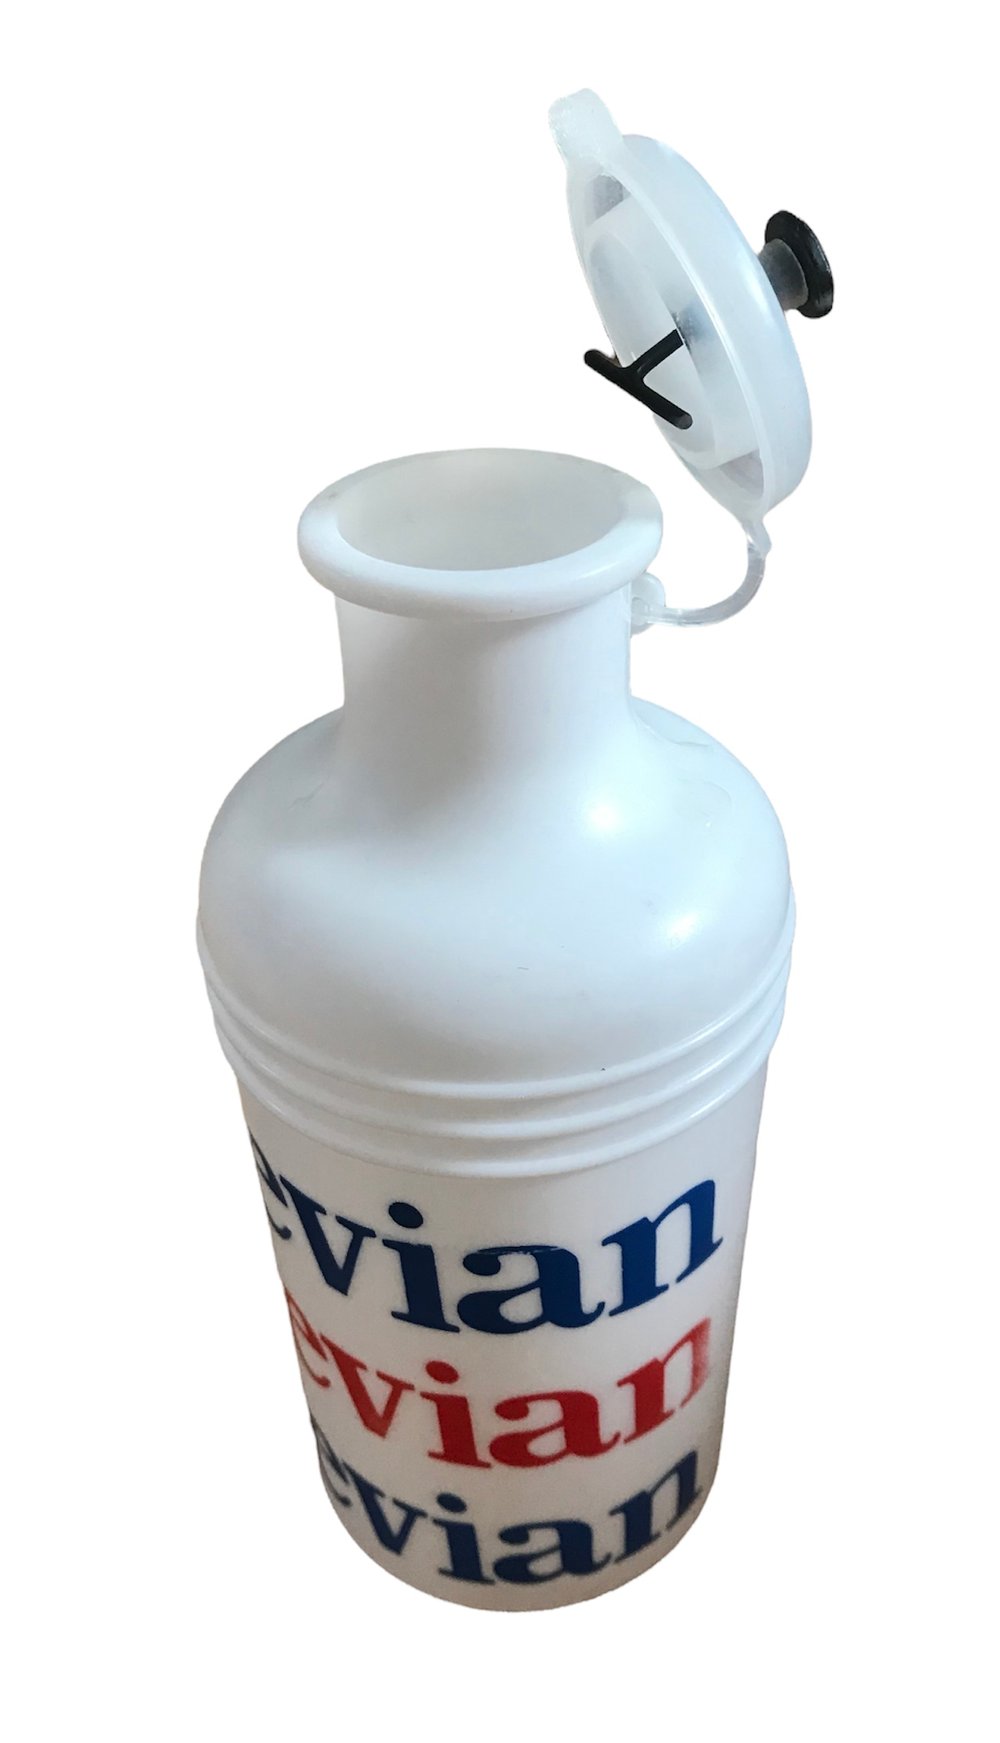 1969 - Tour de France / Evian water bottle 